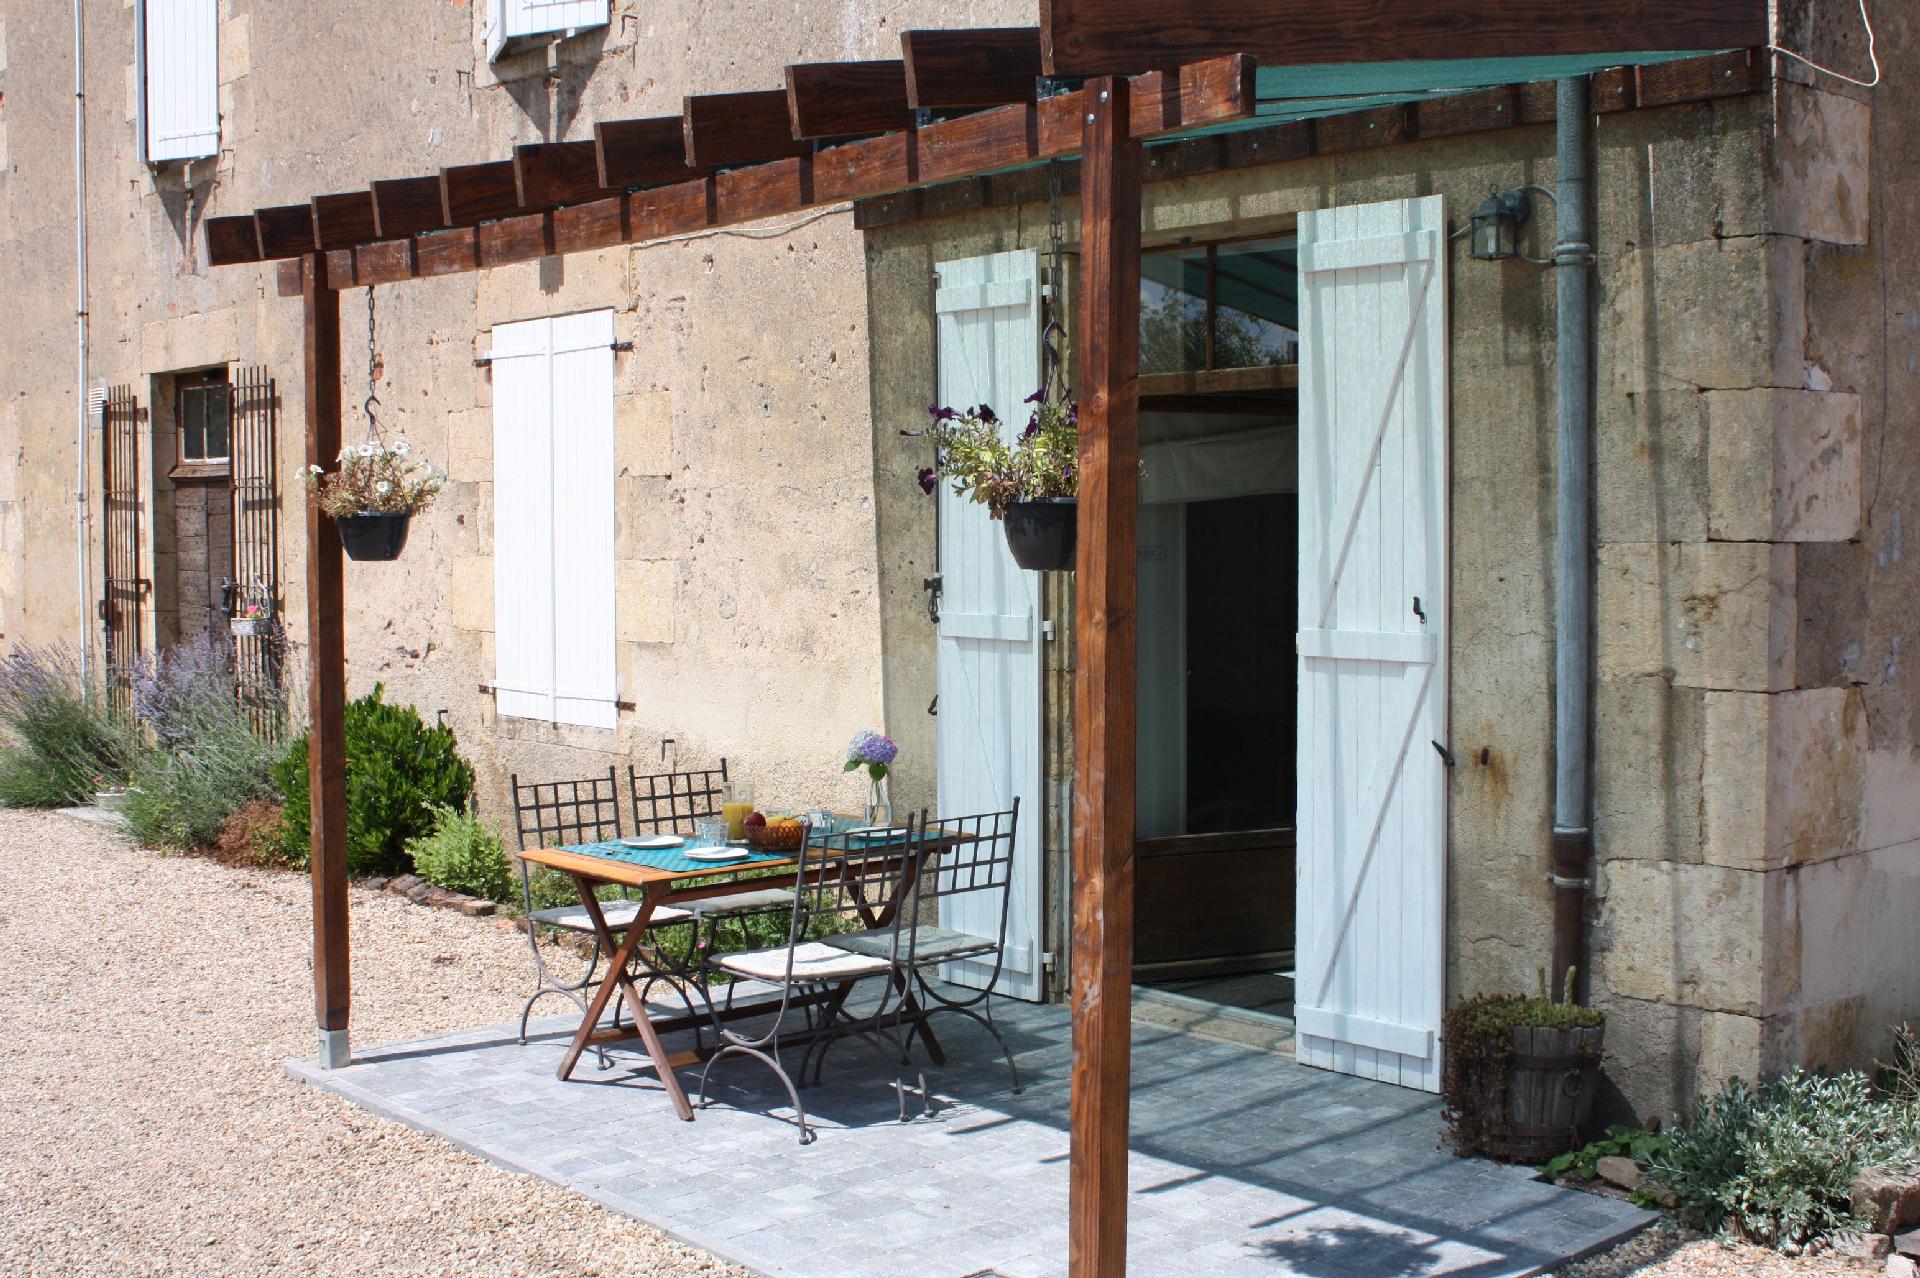 Ferienwohnung für 4 Personen ca. 55 m² i Besondere Immobilie in Frankreich